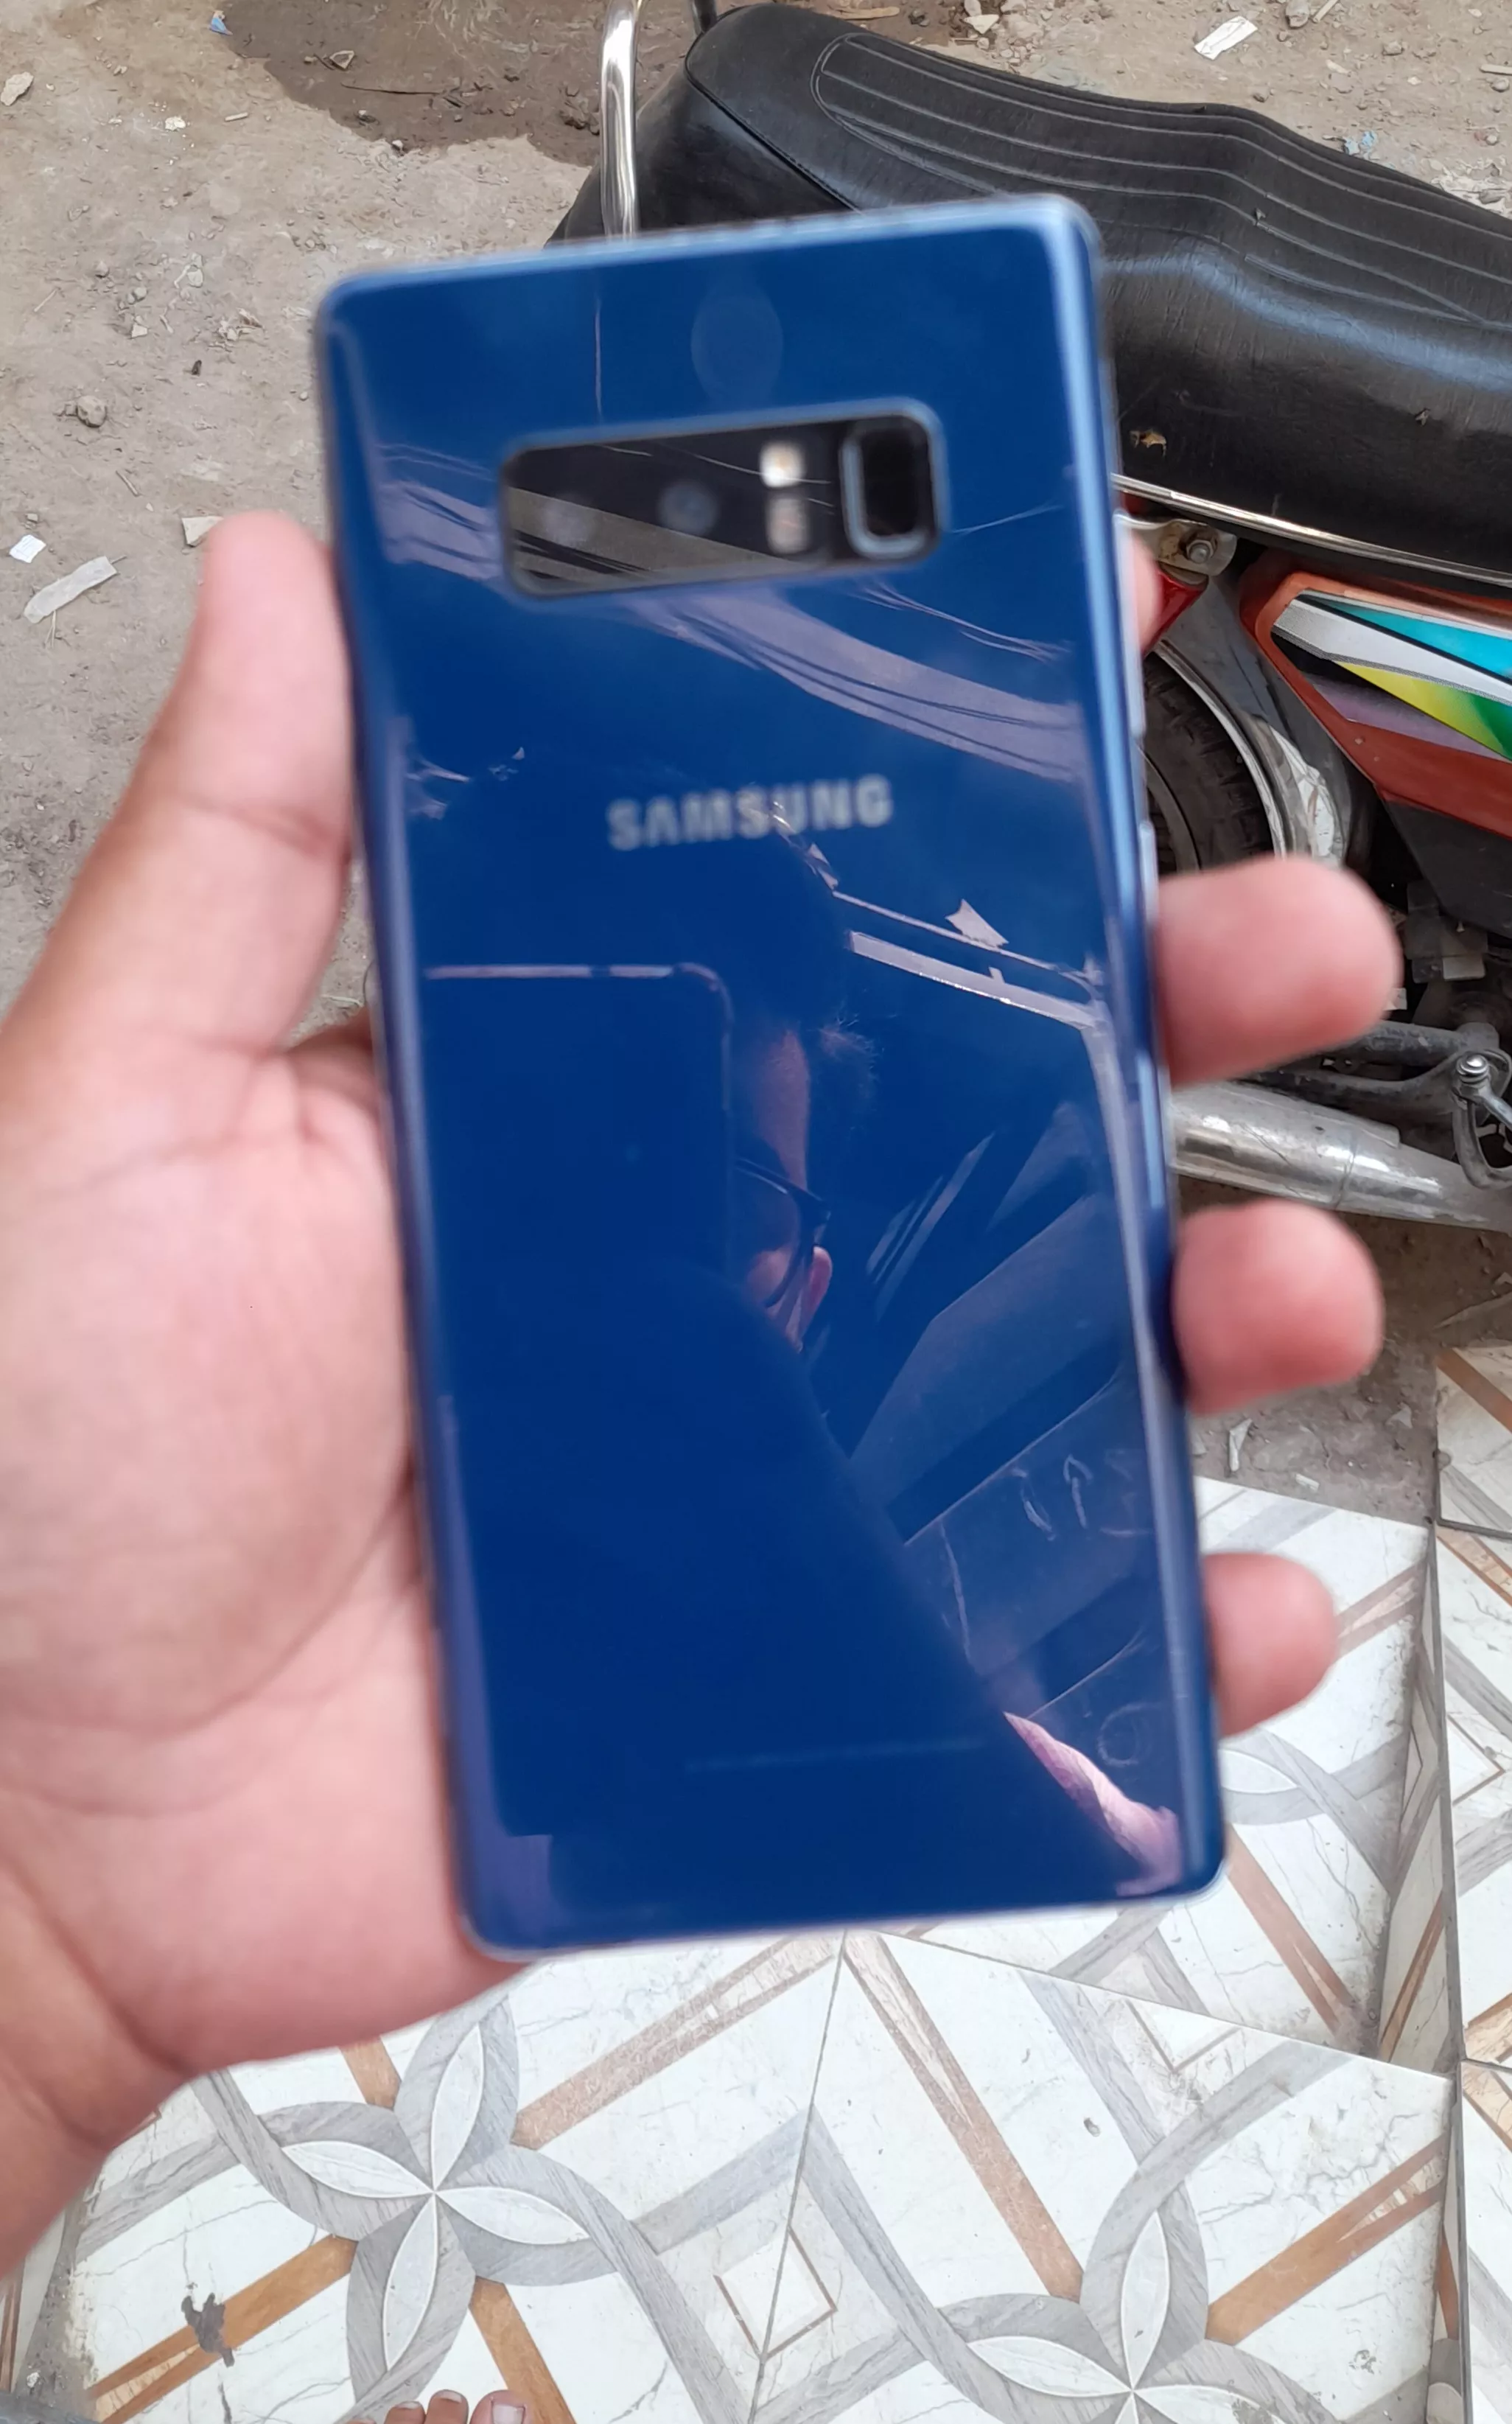 Samsung Note 8 - photo 1